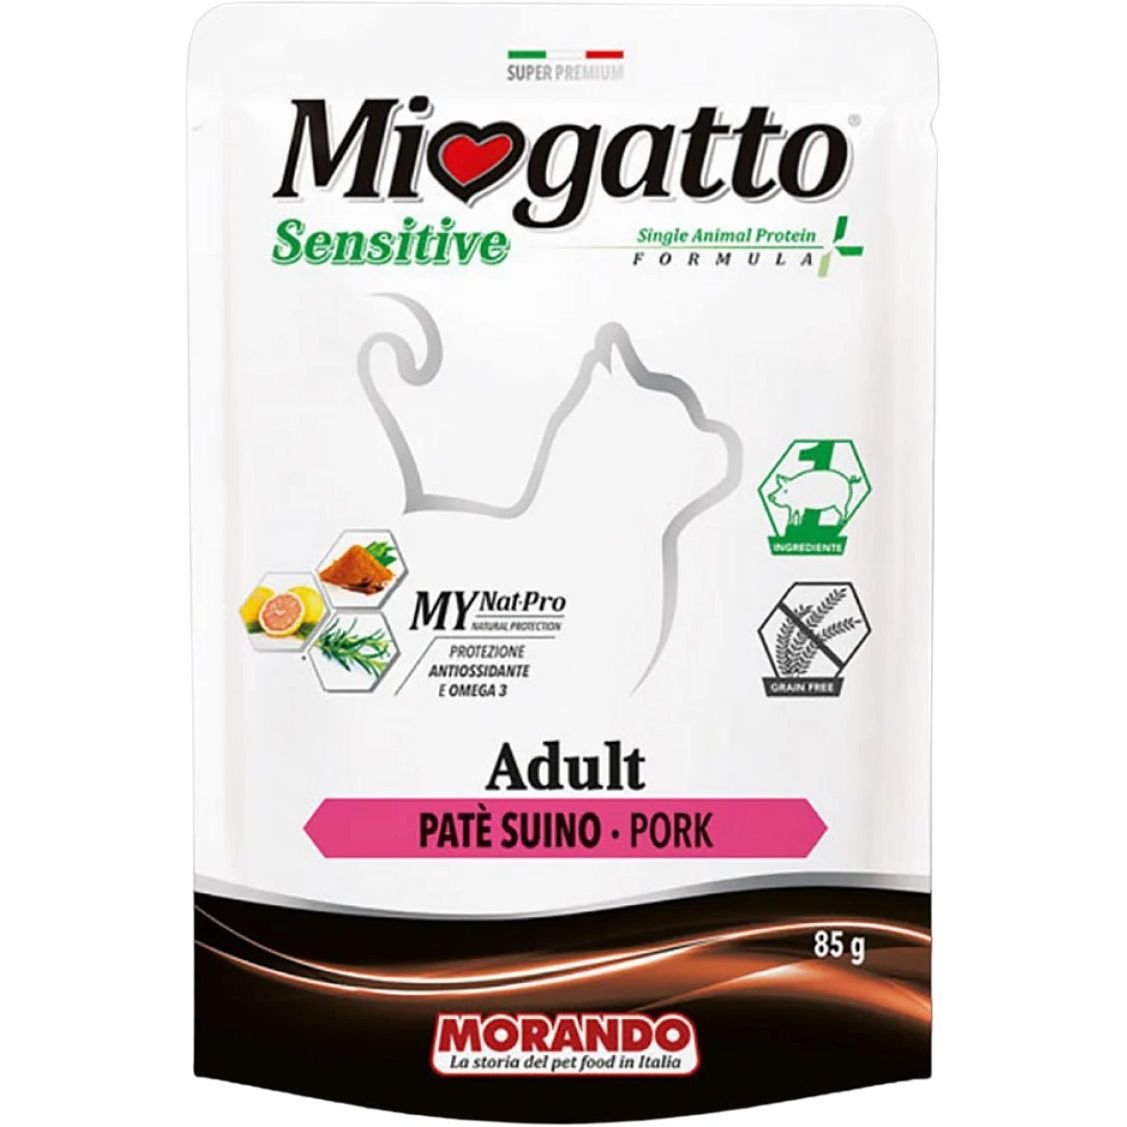 Монопротеїновий беззерновий вологий корм для котів Morando MioGatto Sensitive Monoprotein, прошуто, 85 г - фото 1